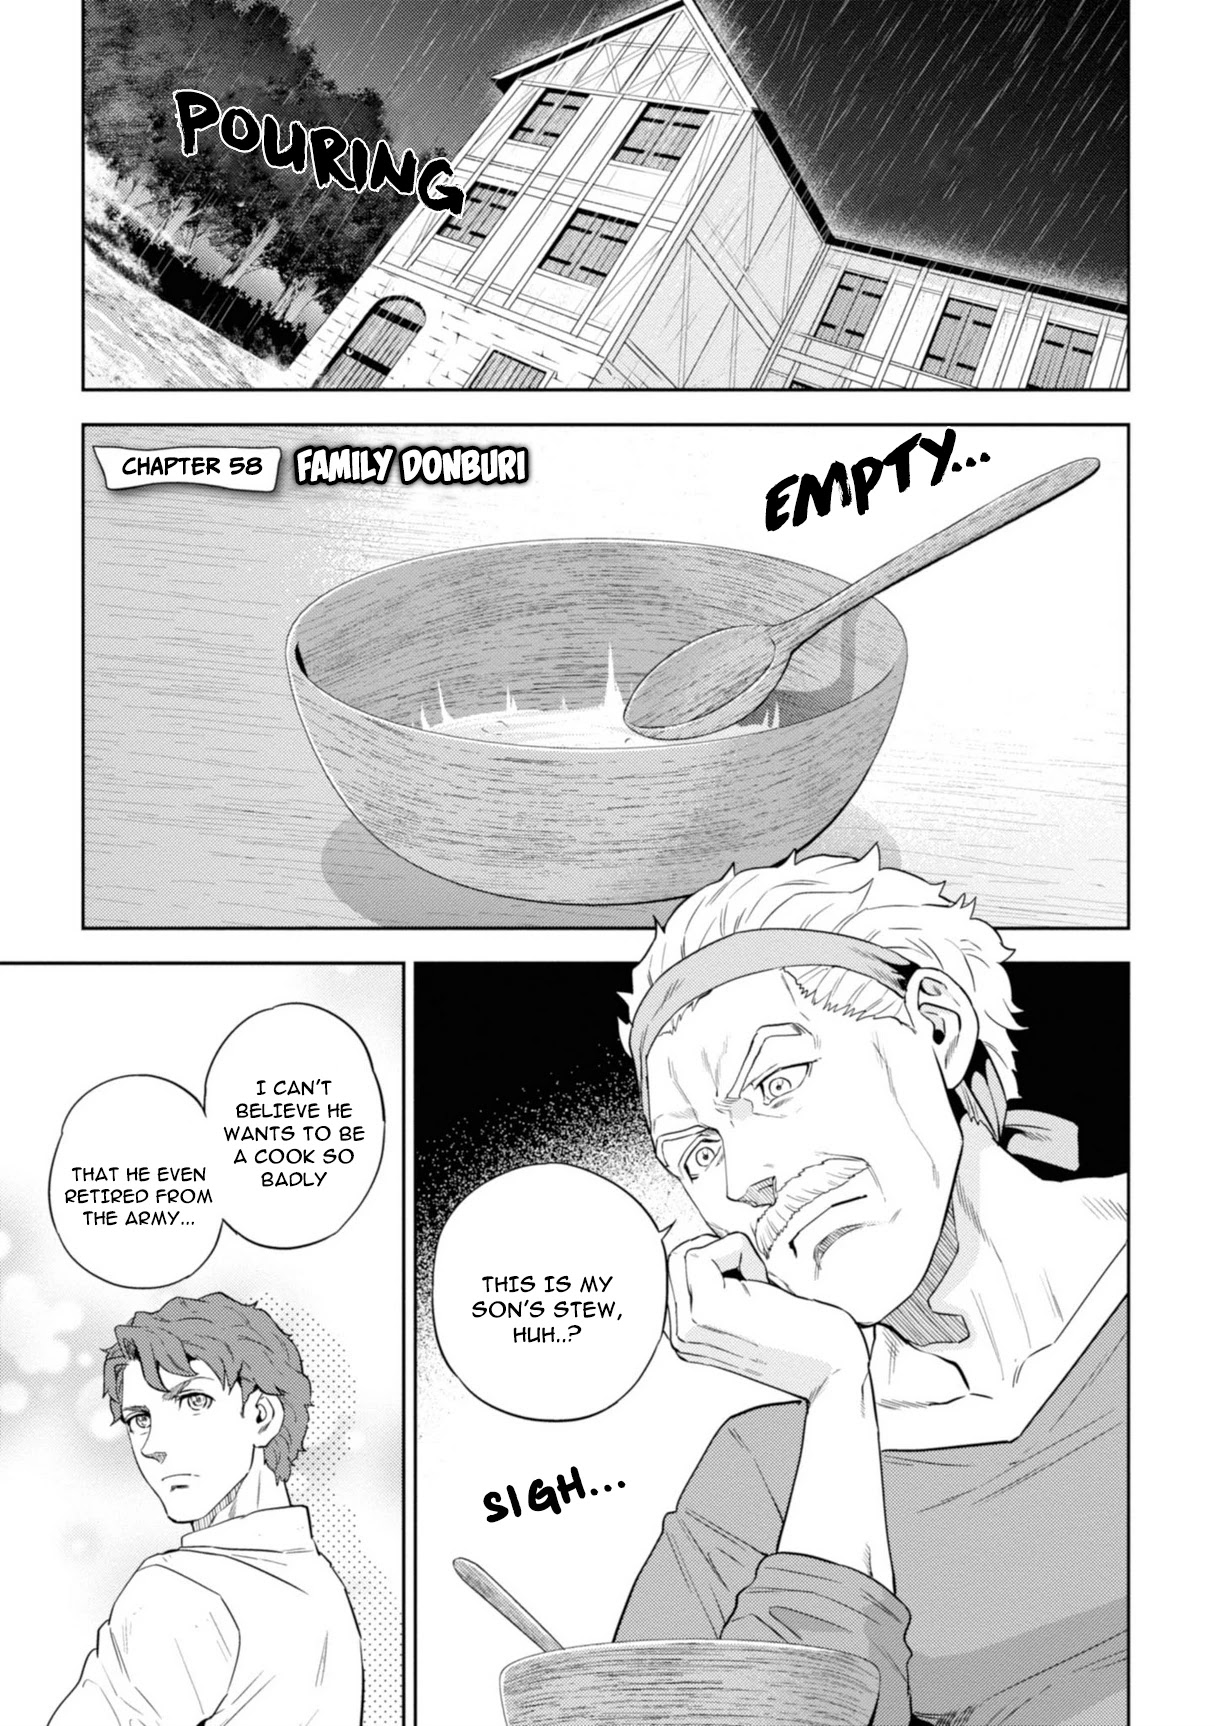 Isekai Izakaya - Page 2